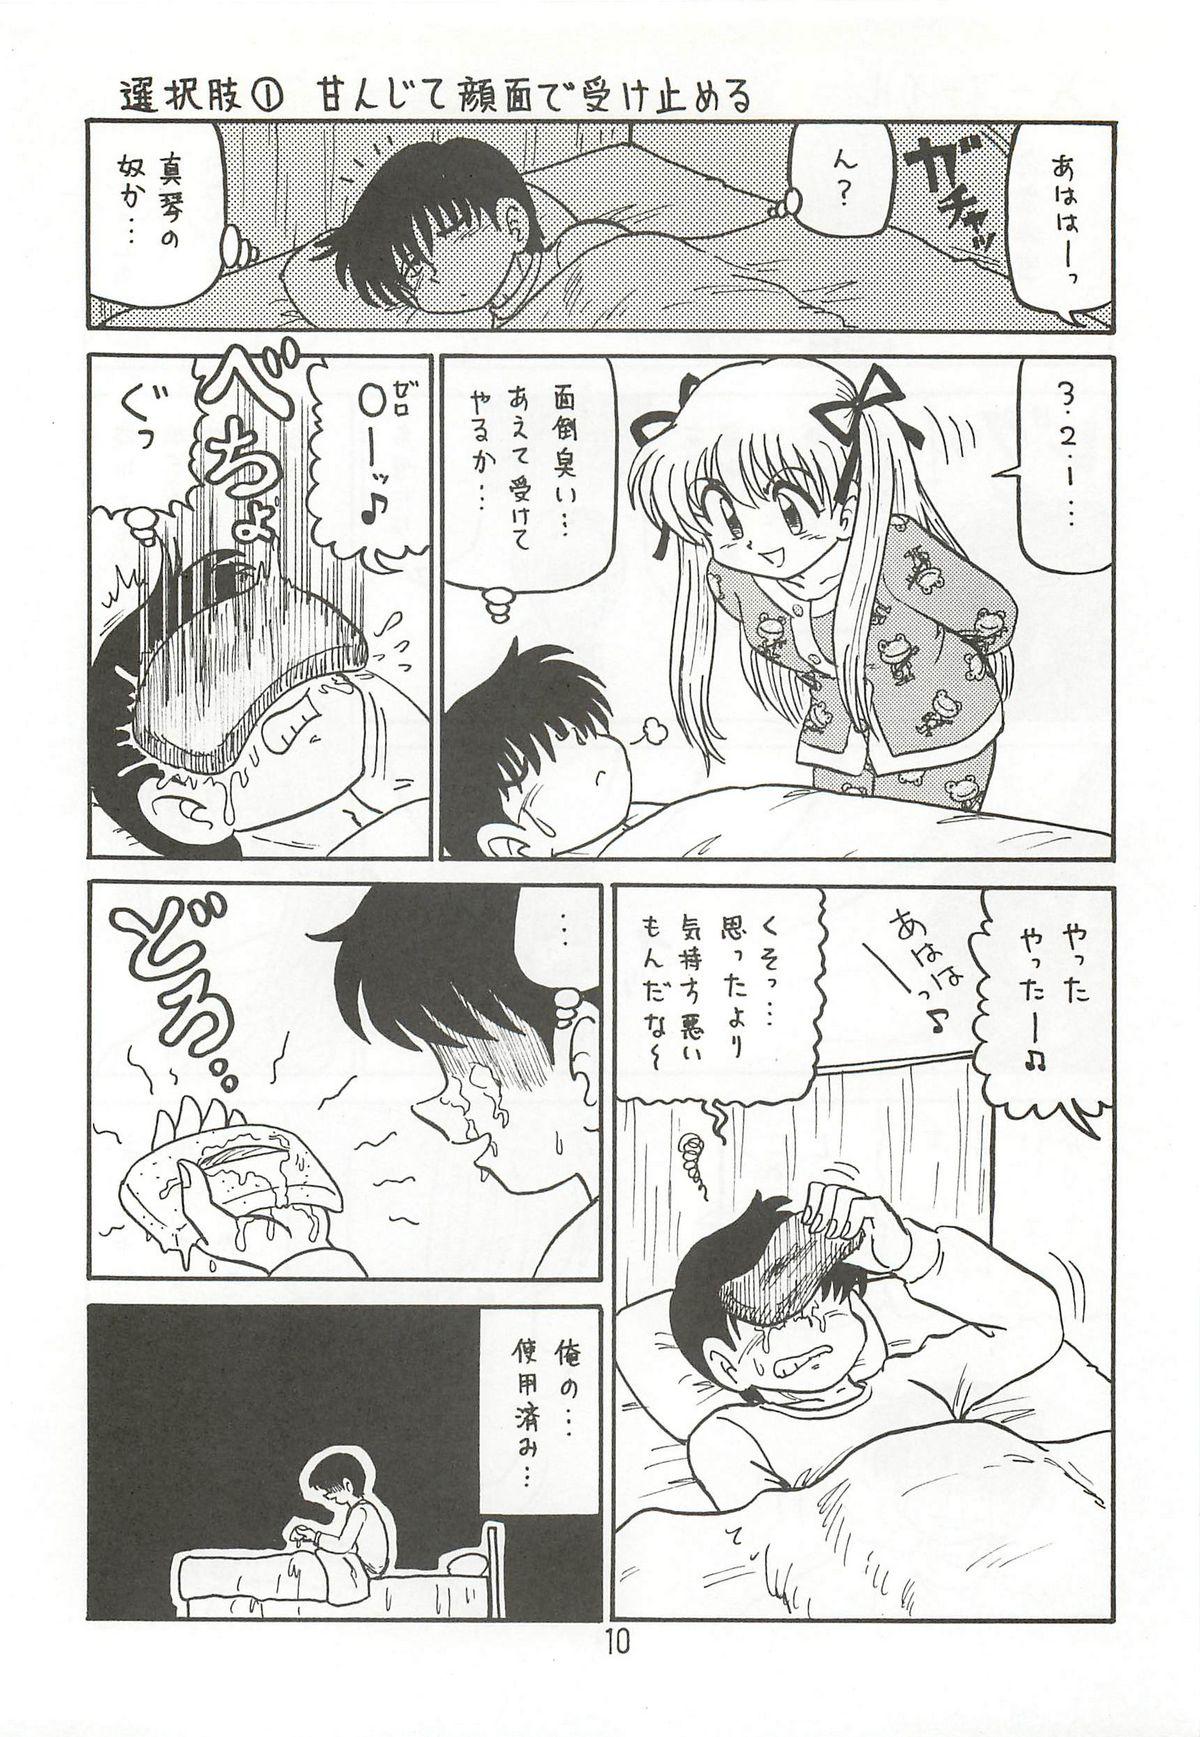 Lez Hardcore Ayu to Makoto zoukyoukaiteiban - Kanon 18 Year Old - Page 9